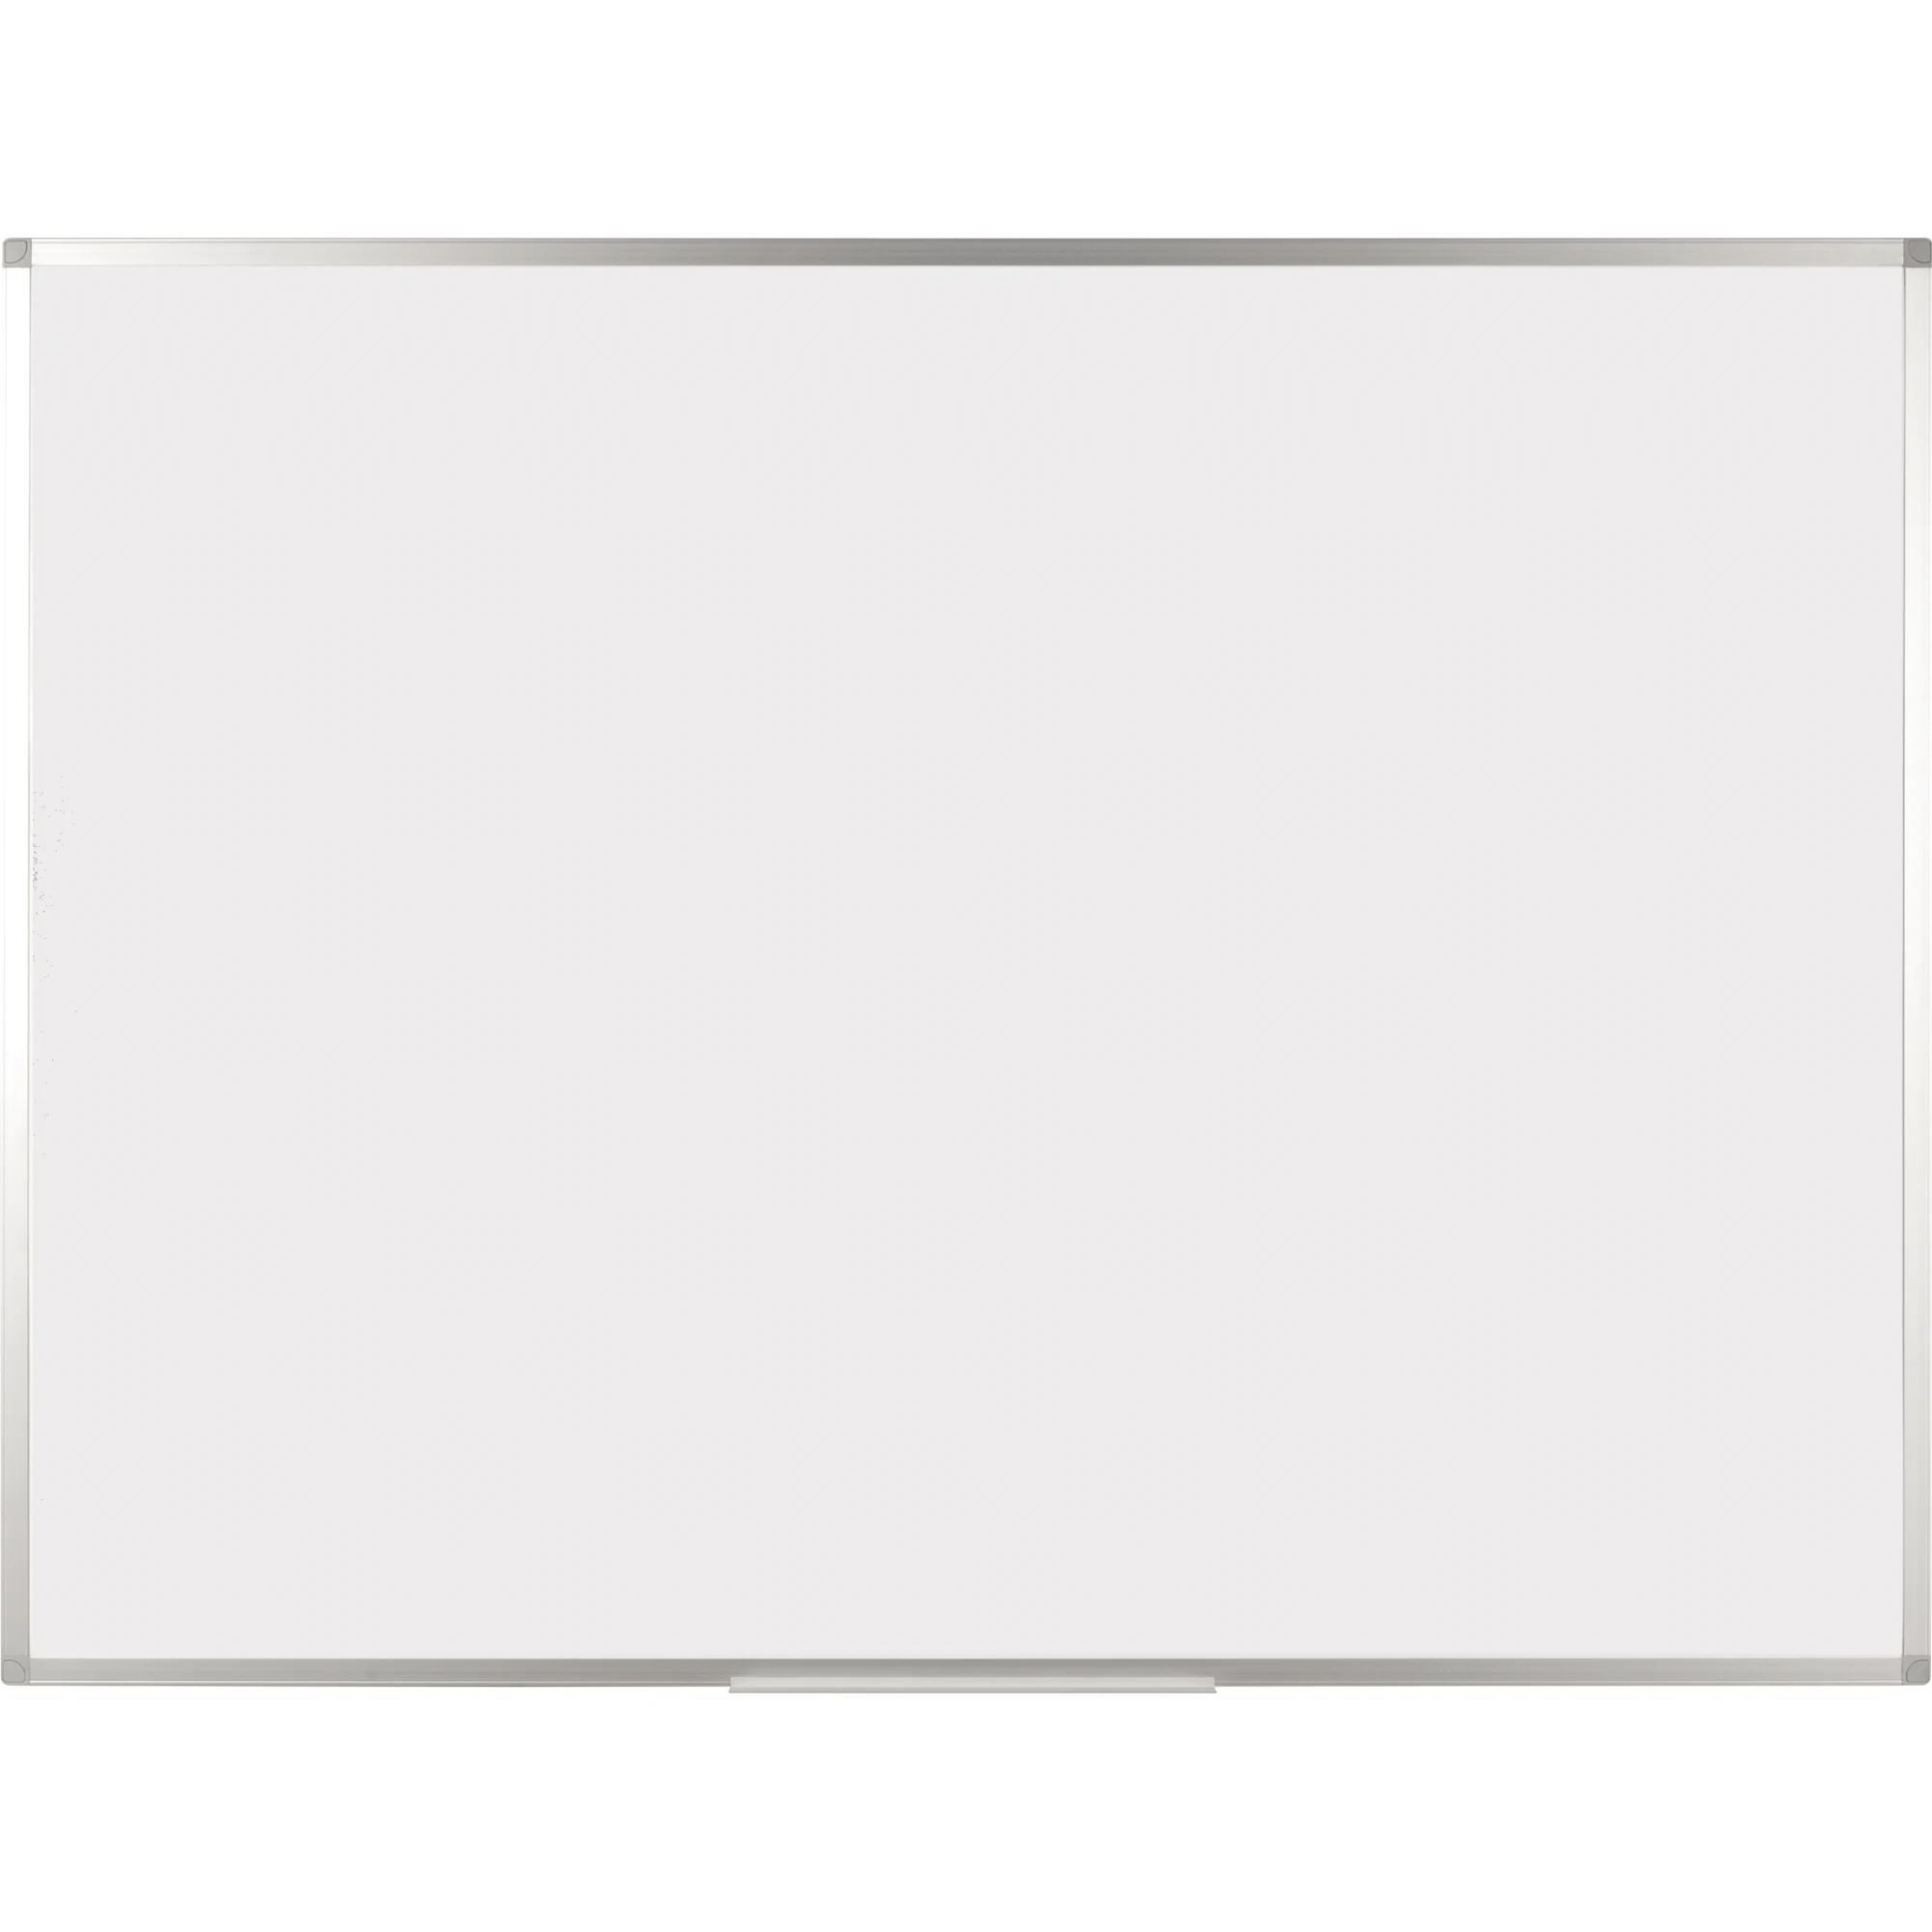 BI-OFFICE Whiteboard Ayda lackiert 90x60cm 